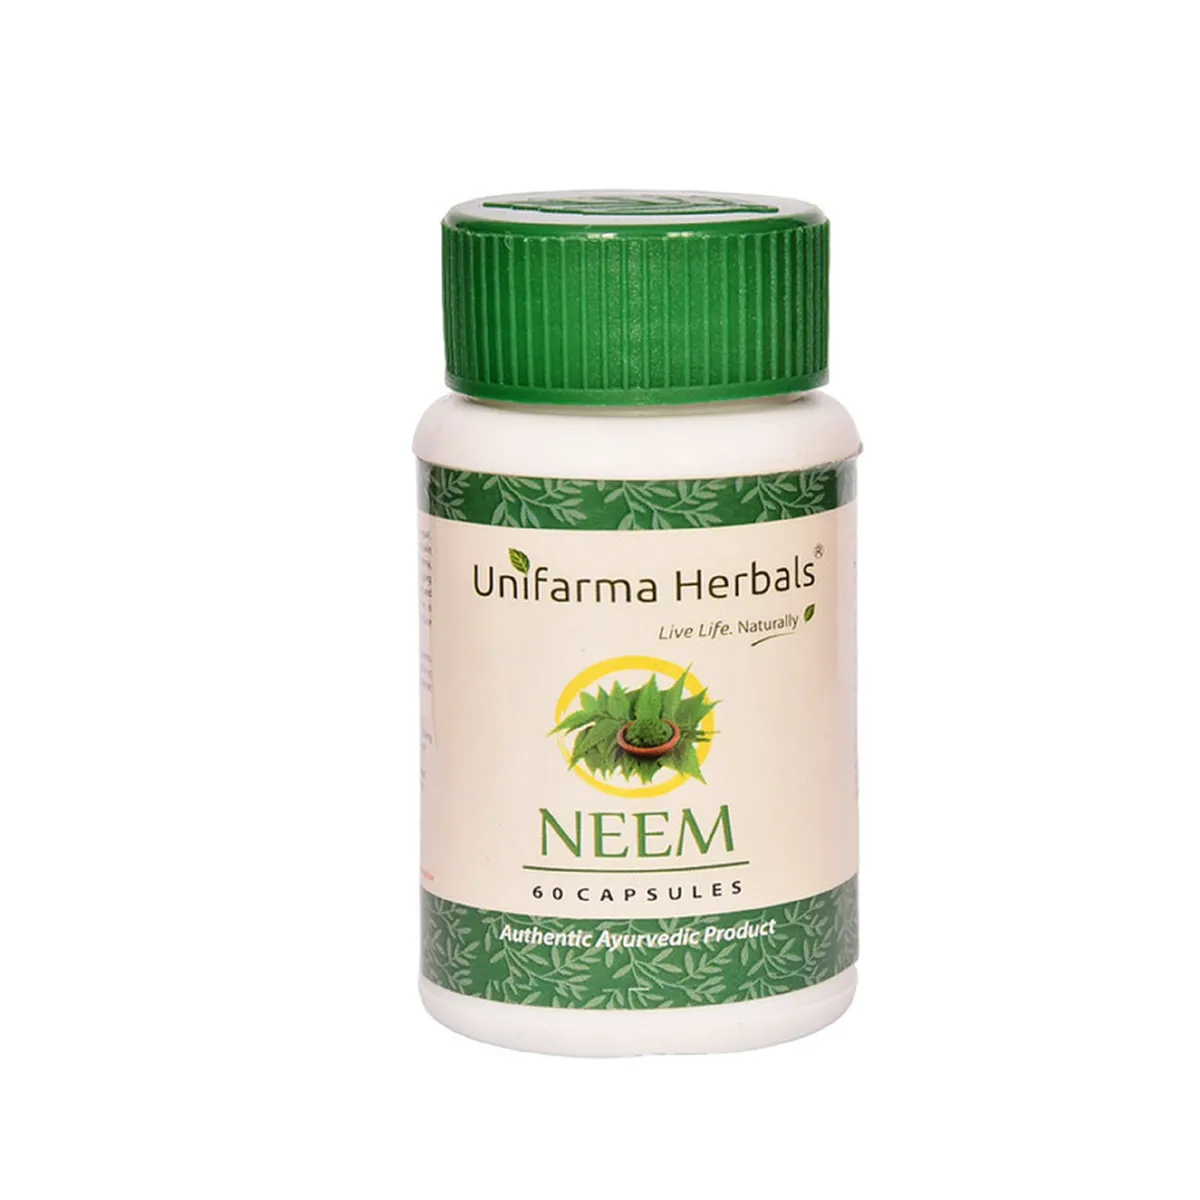 Unifarma Herbals Neem 60caps